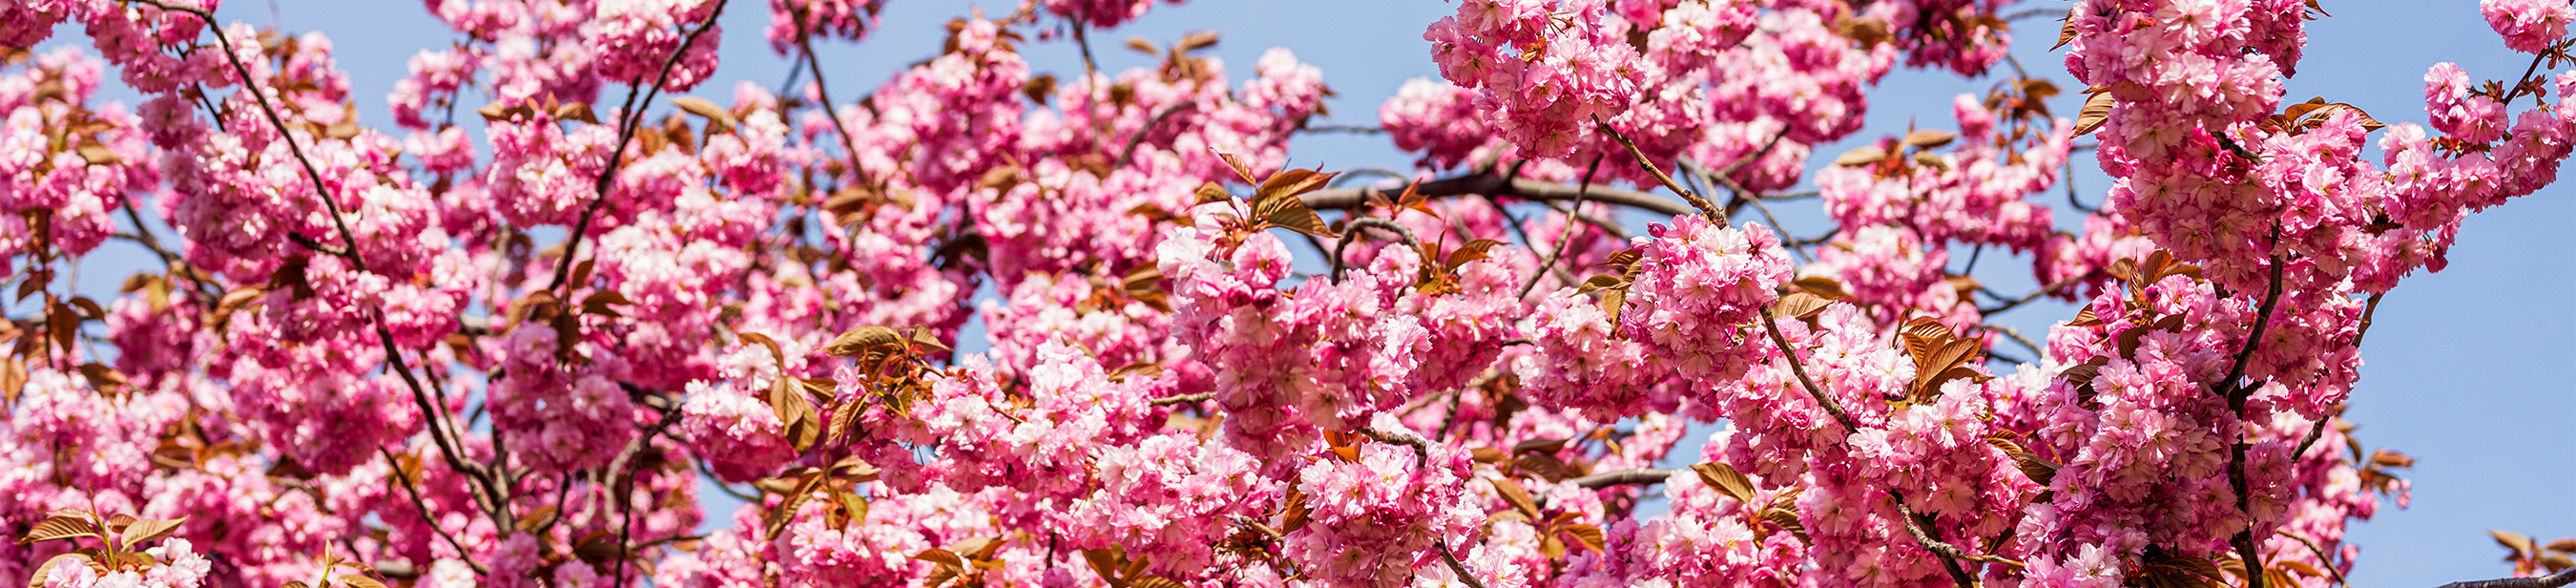 En trädkrona med rosa blommor